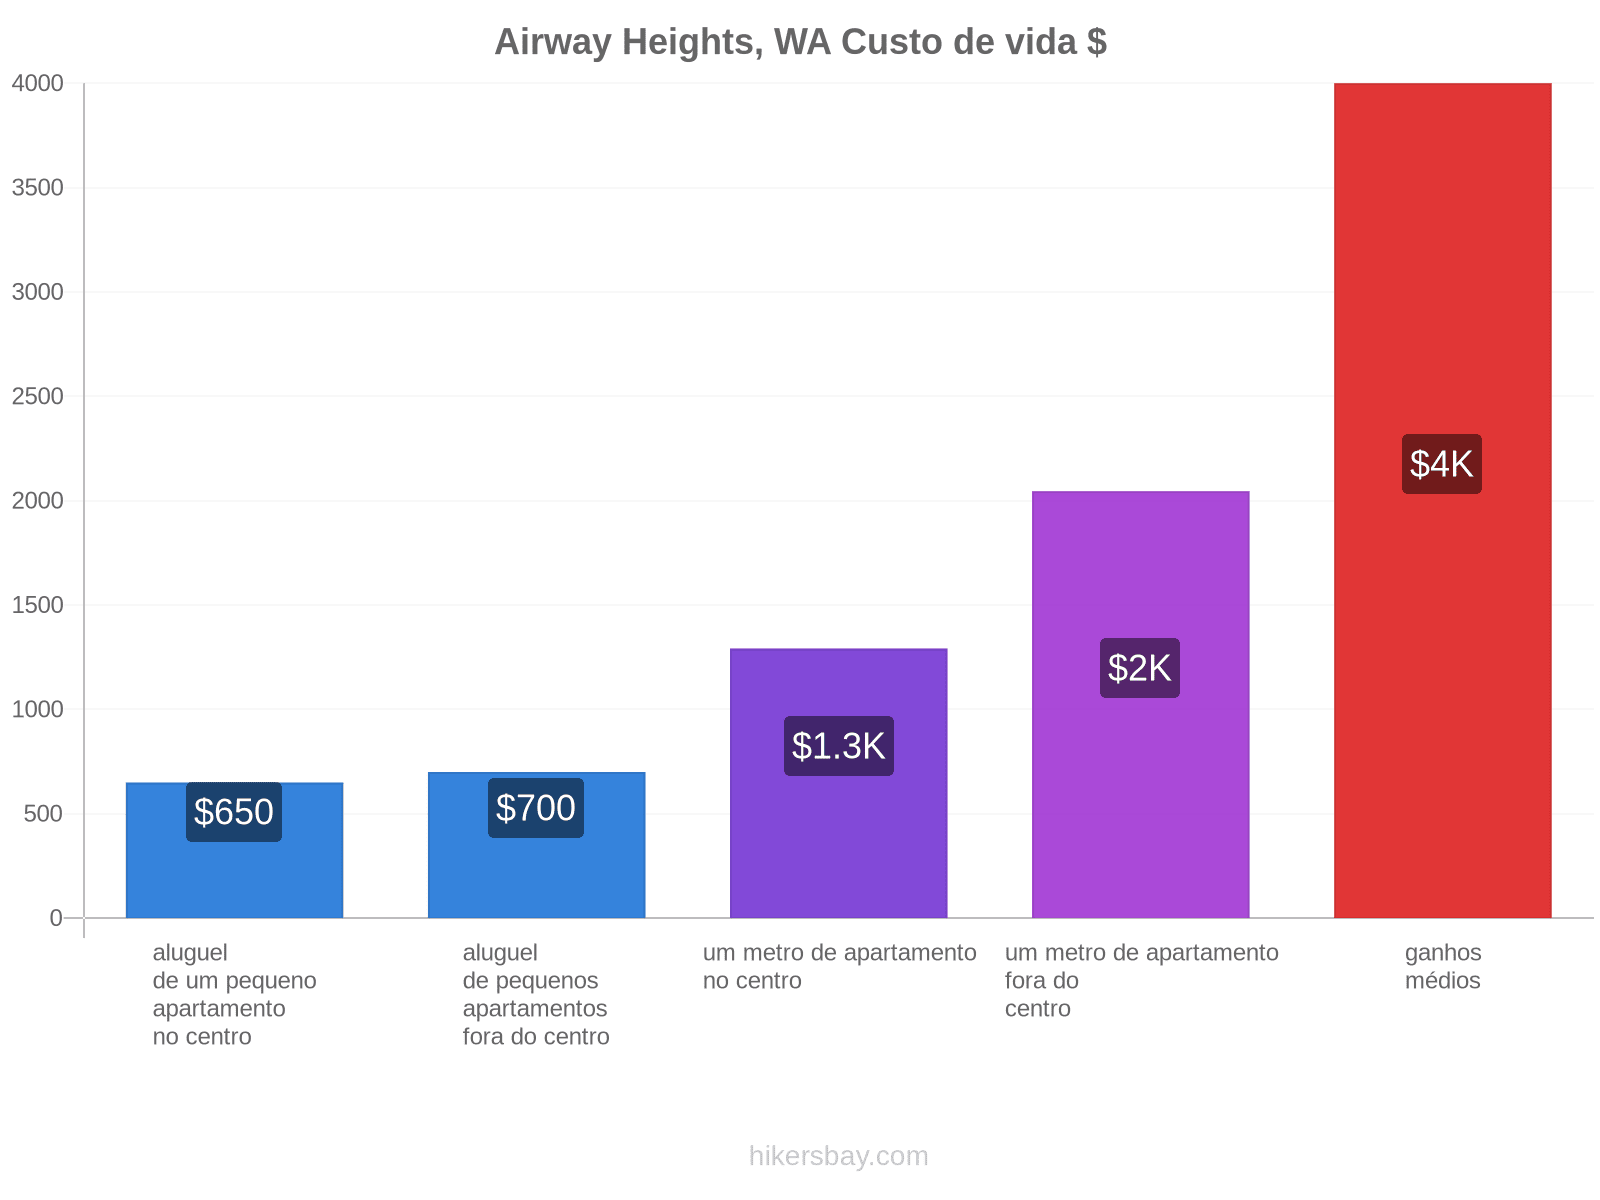 Airway Heights, WA custo de vida hikersbay.com